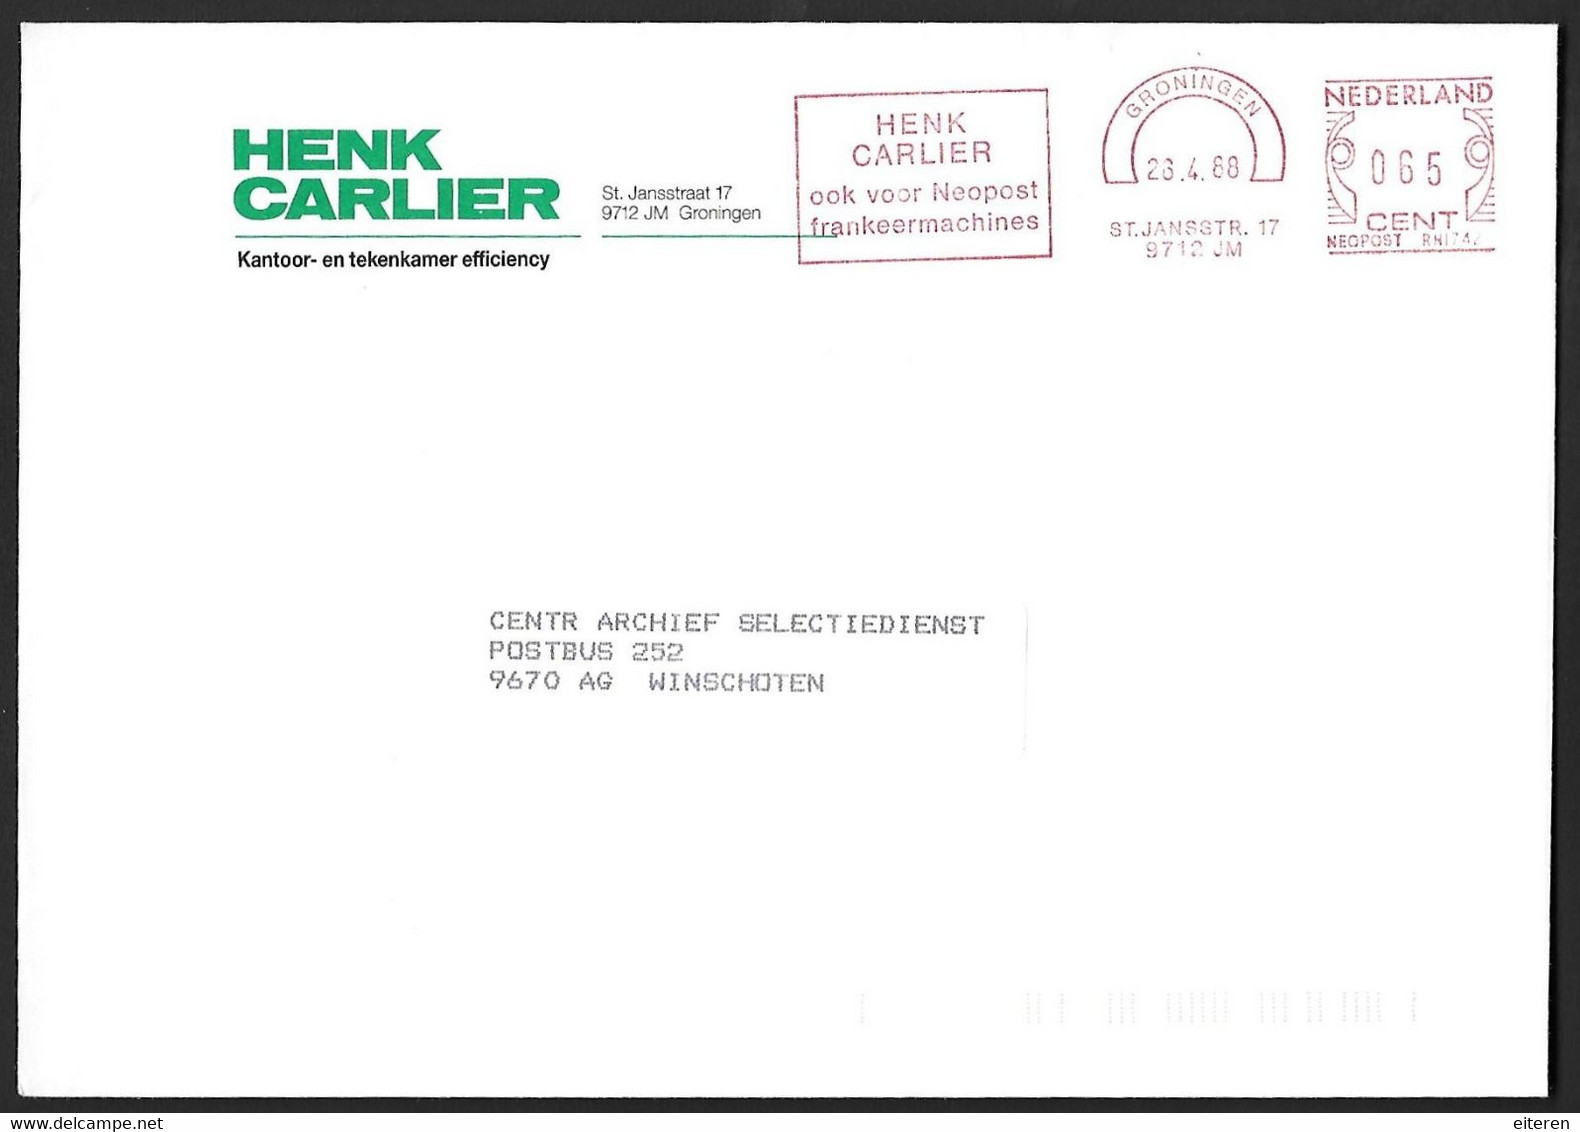 Henk Carlier - Ook Voor Neopost Frankeermachines - Maschinenstempel (EMA)